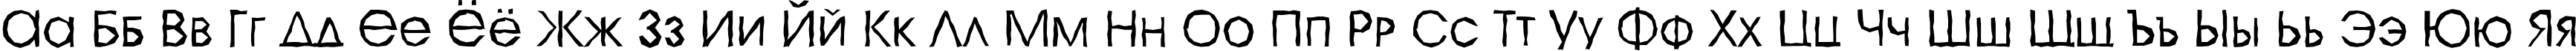 Пример написания русского алфавита шрифтом a_AvanteCpsLCBrk Light